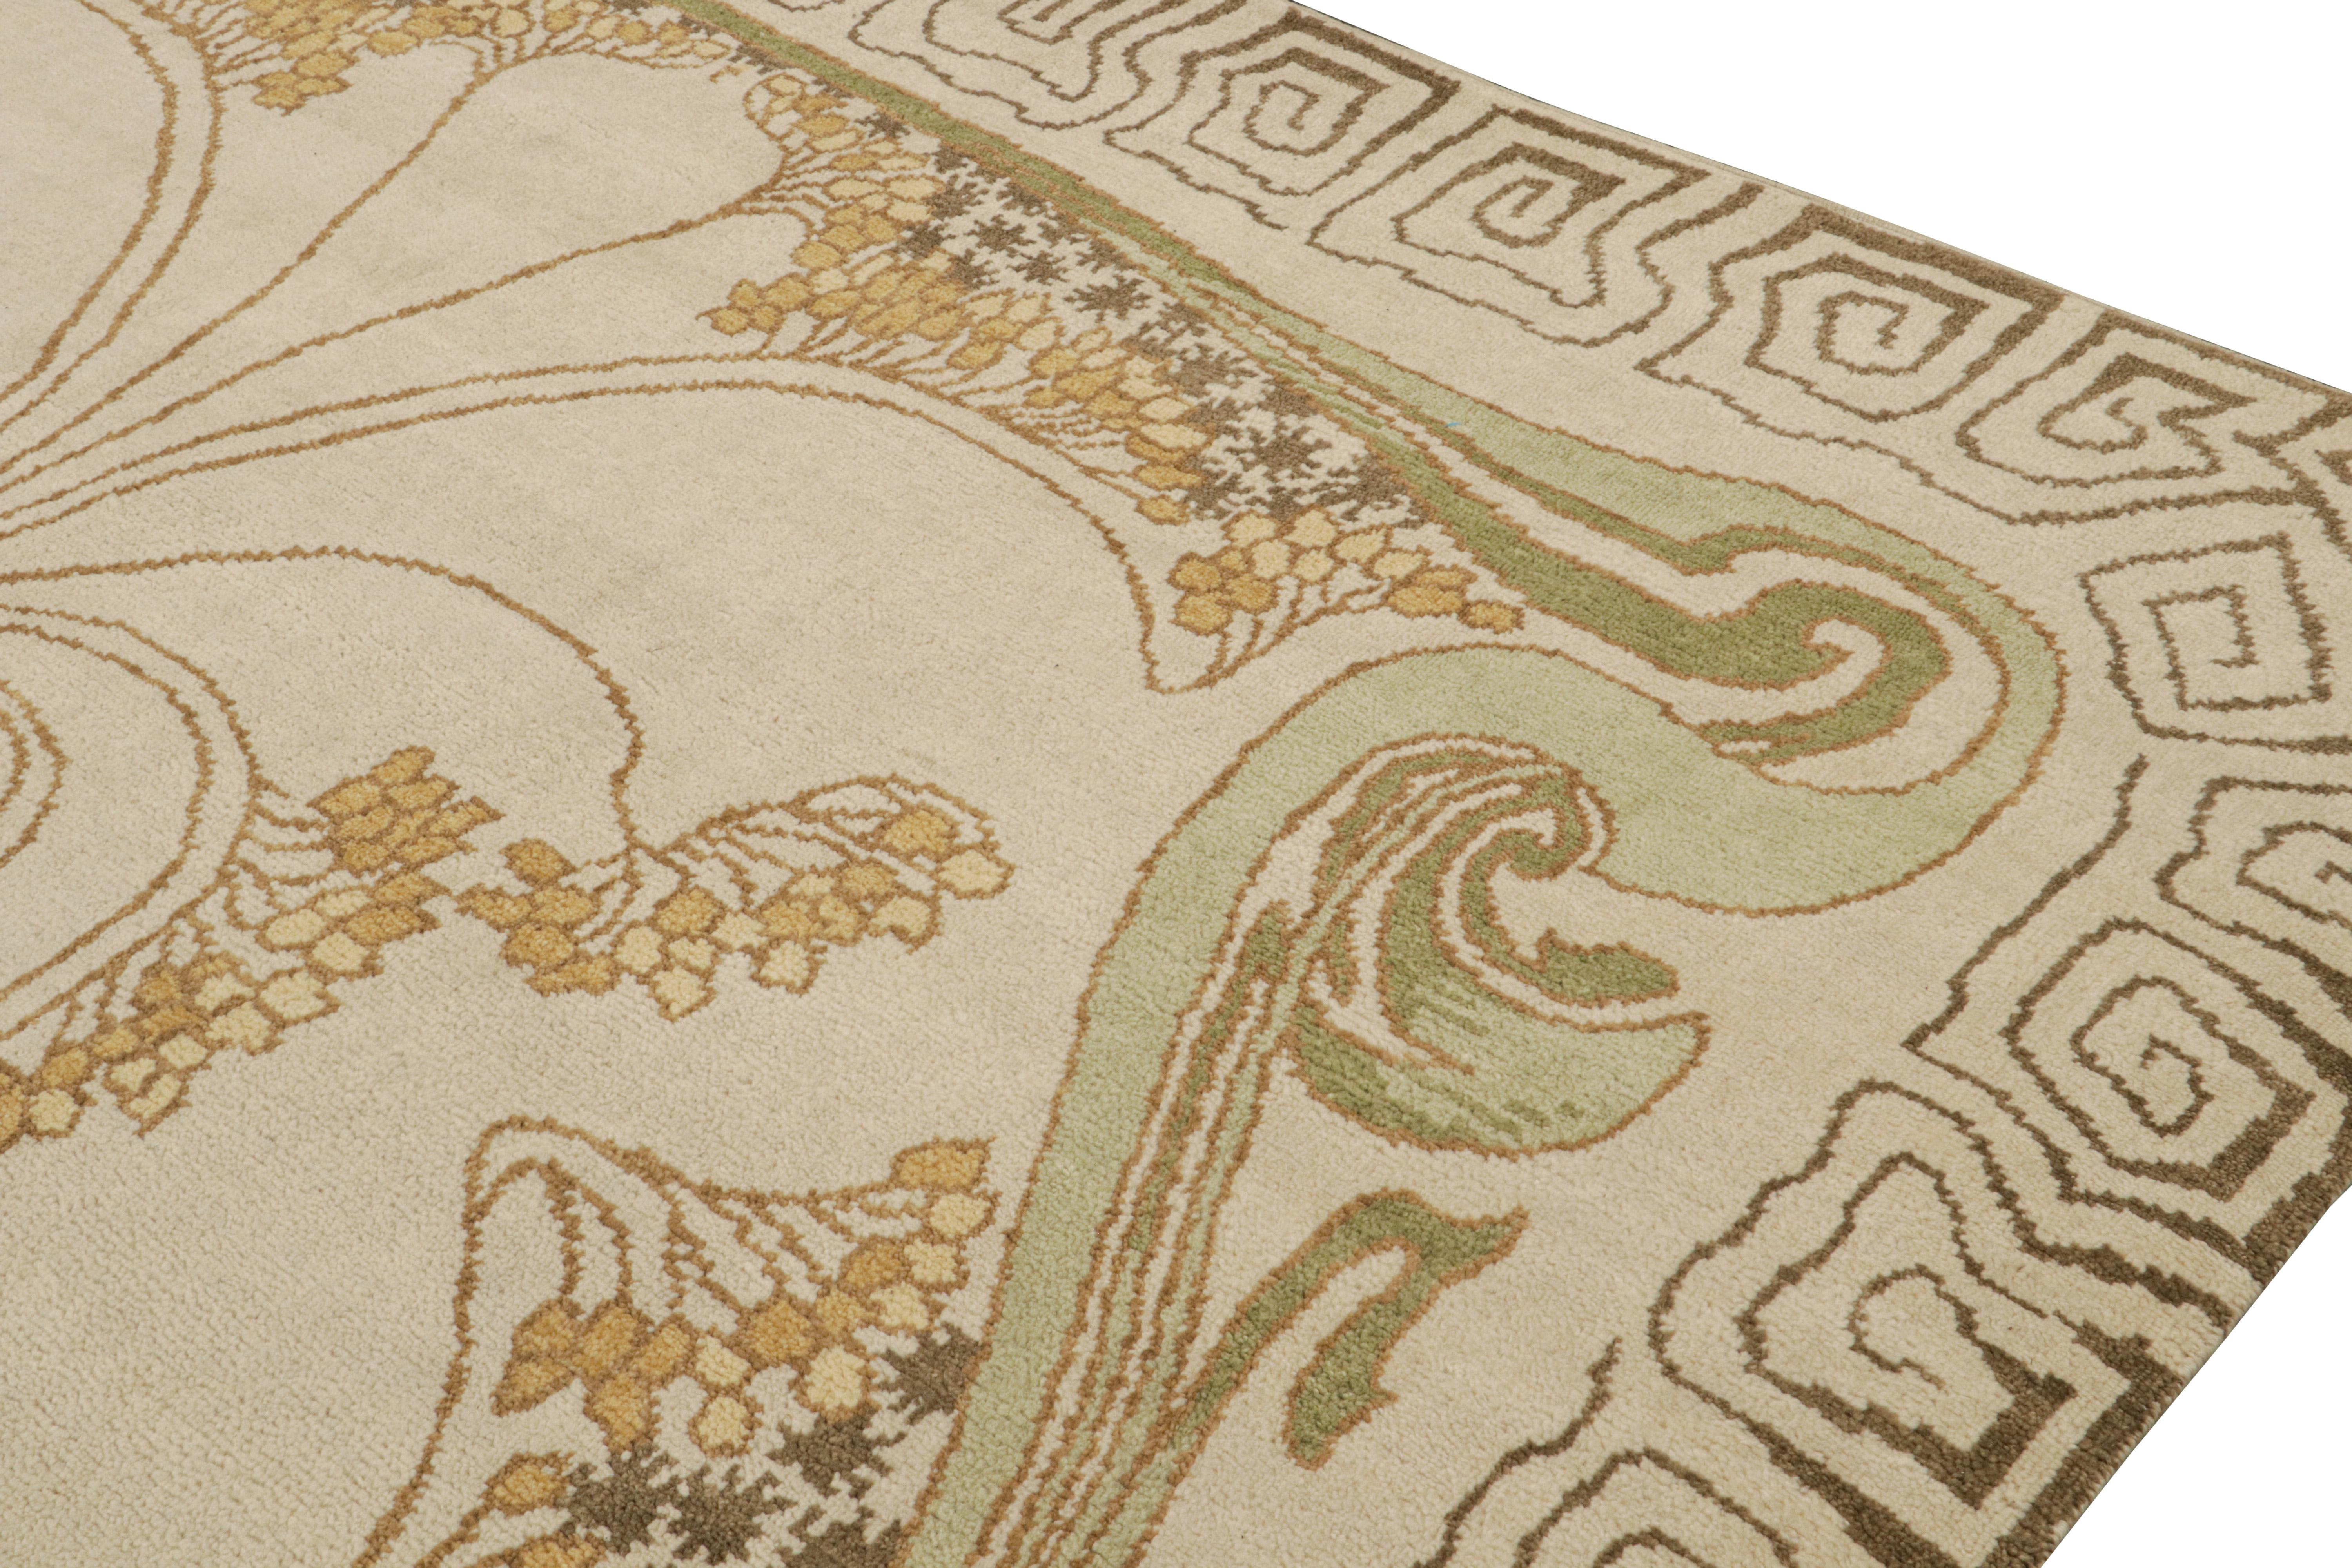 Indien Rug & Kilim's French Style Art Deco rug in Cream & Gold Geometric Patterns (tapis Art déco de style français à motifs géométriques crème et or) en vente